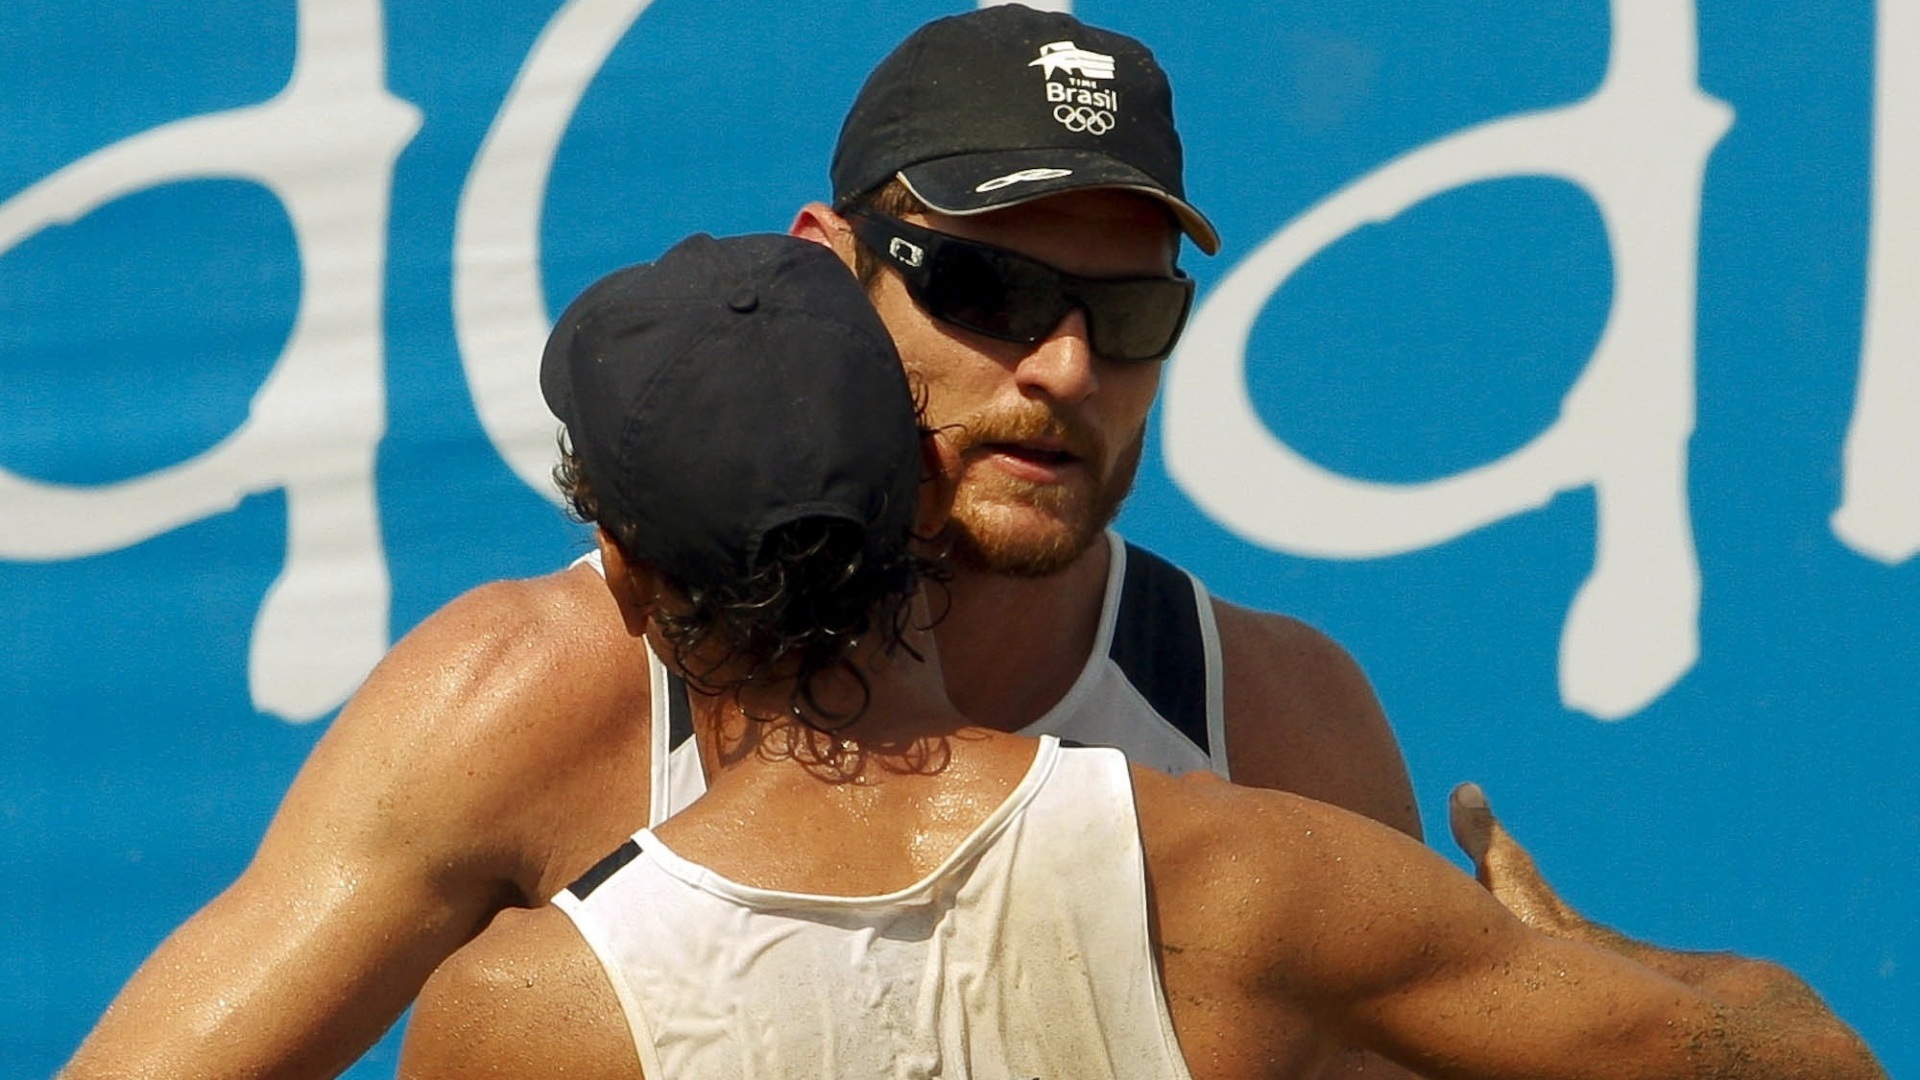 Emanuel abraça Alison na vitória da dupla pela semifinal dos Jogos Pan-Americanos em Guadalajara (21/10/2011)